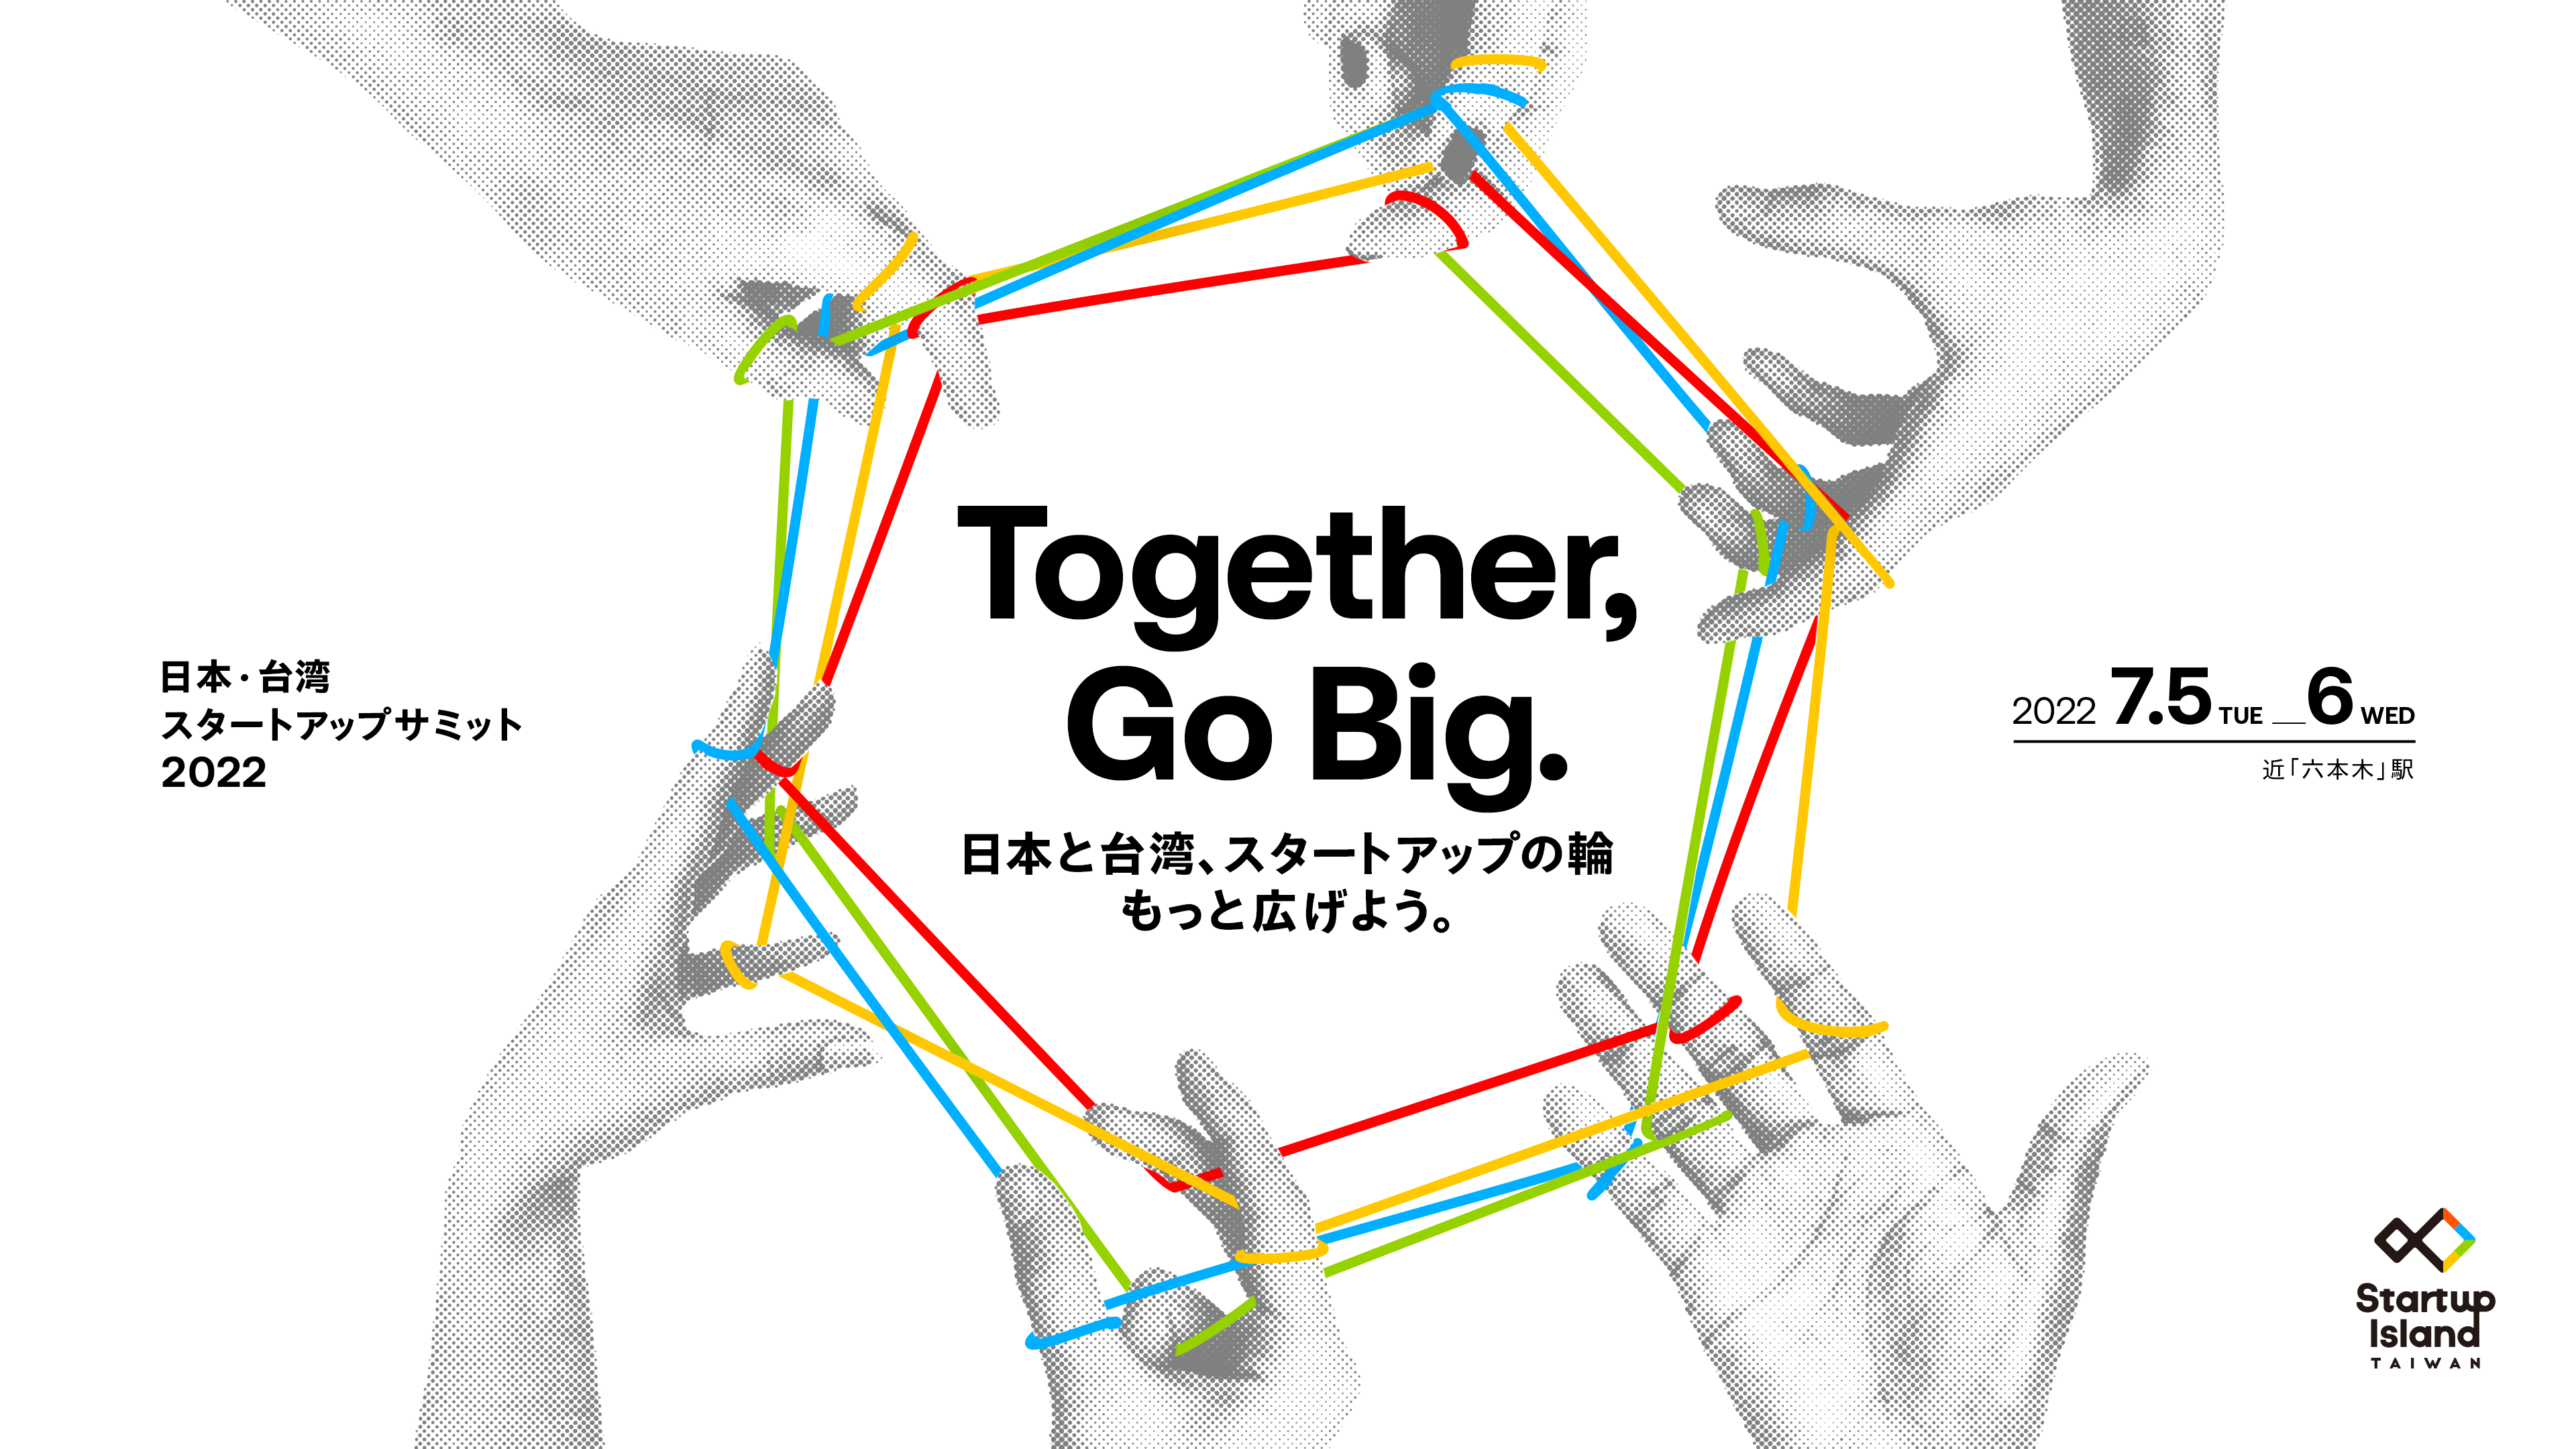 Together, Go Big.